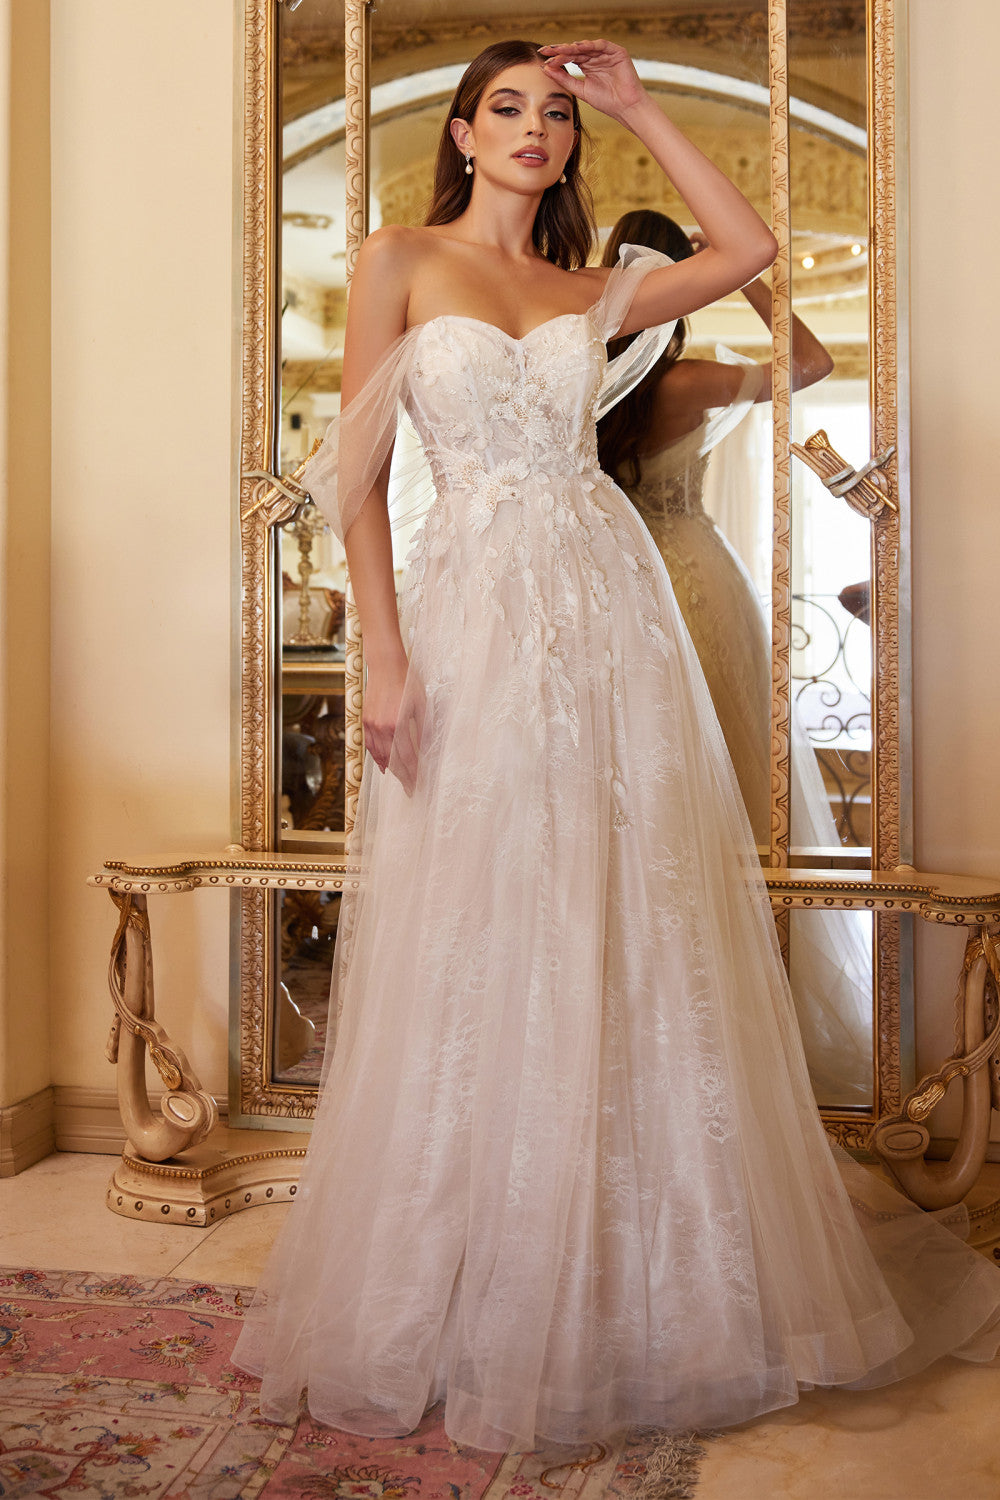 Off-shoulder A-line dress w/ floral appliqués for modern boho wedding-smcdress